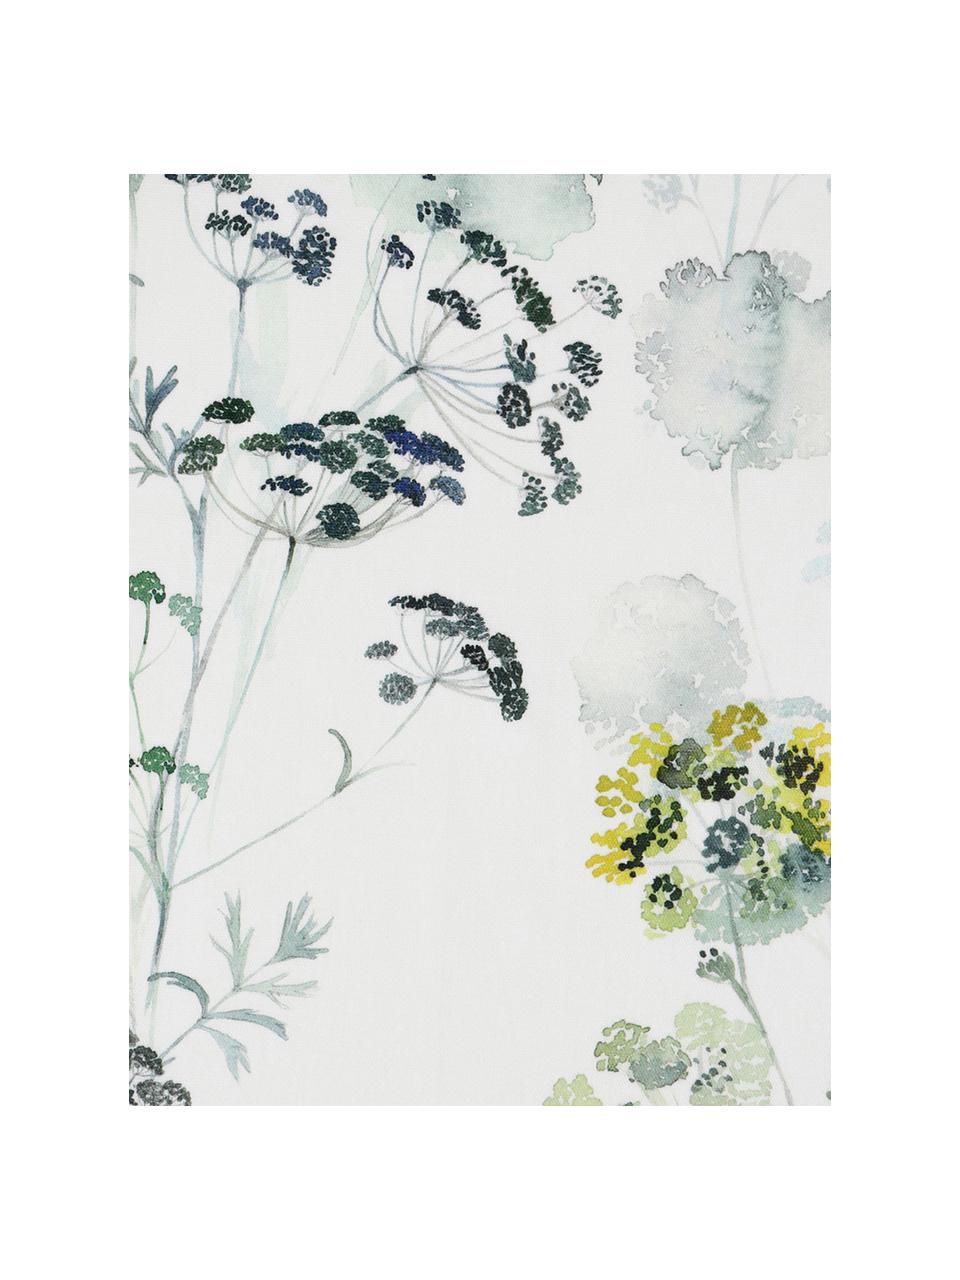 Tafelkleed Herbier met aquarel print, Katoen, Wit, groentinten, 6-8 personen (B 160 x L 260 cm)